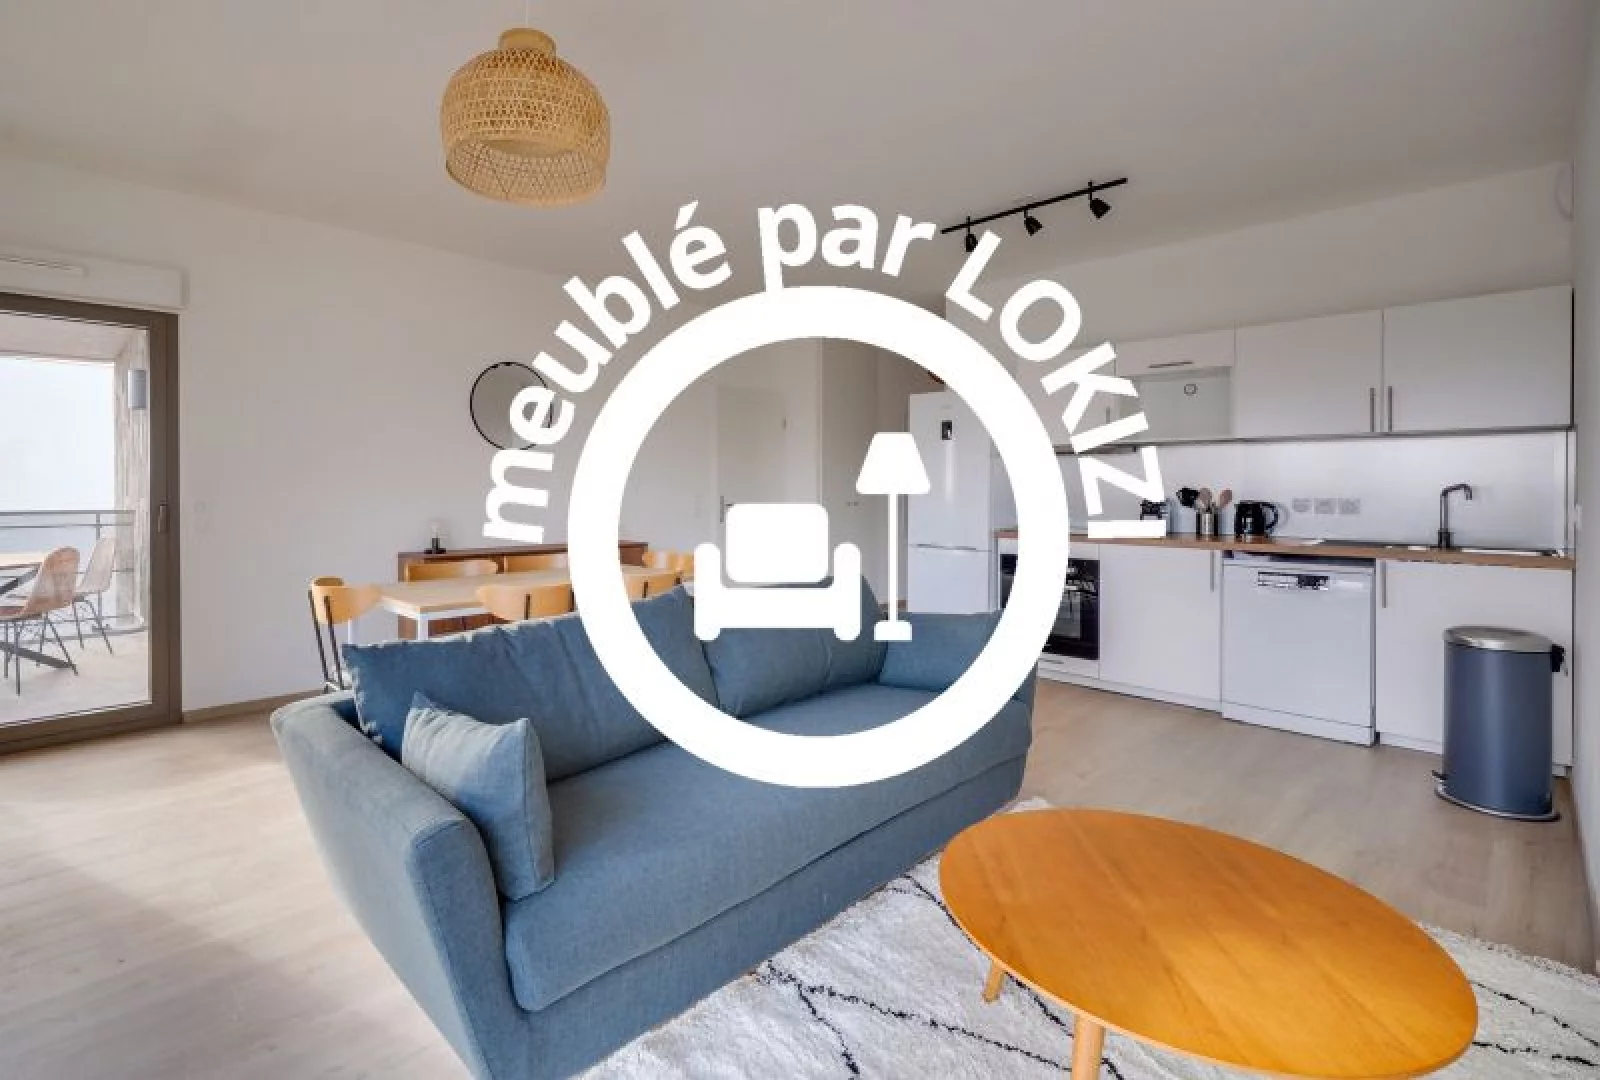 Location appartement meubl 5 pices 95m avec vue (Bordeaux - Belcier) 